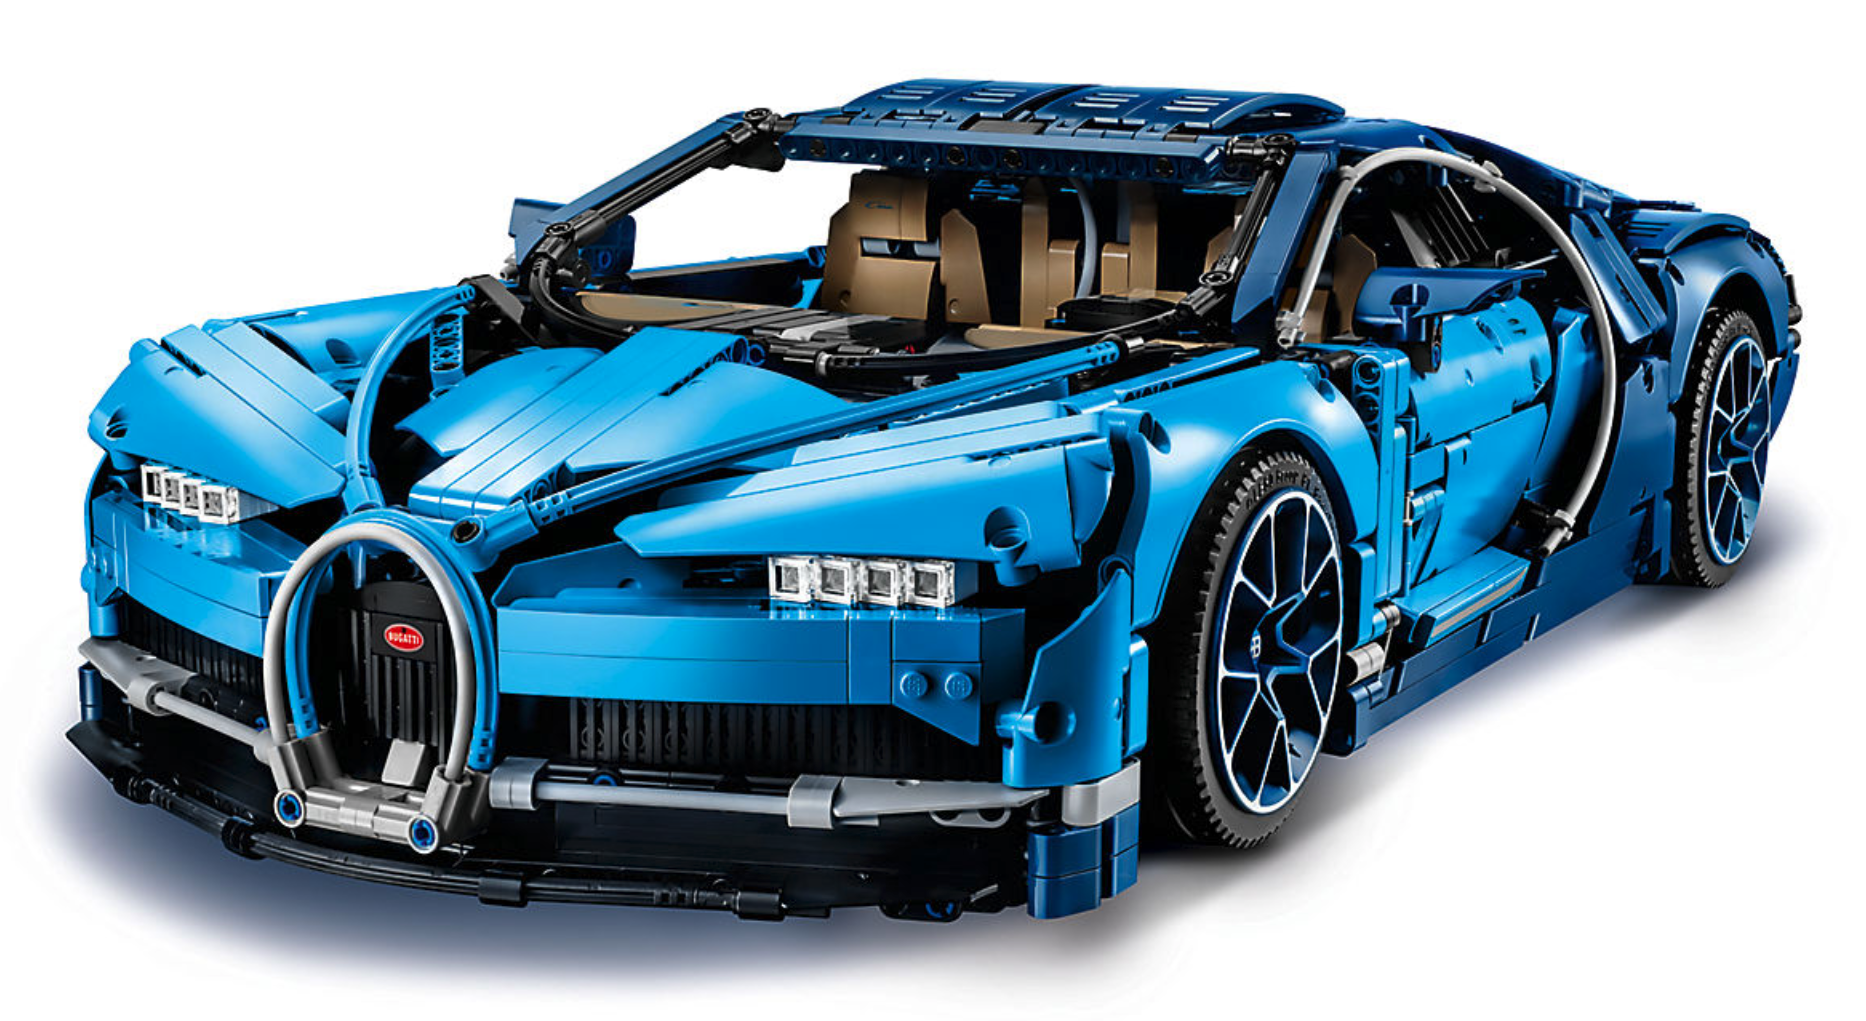 Lego's 2018 Bugatti Chiron kit has functioning ...